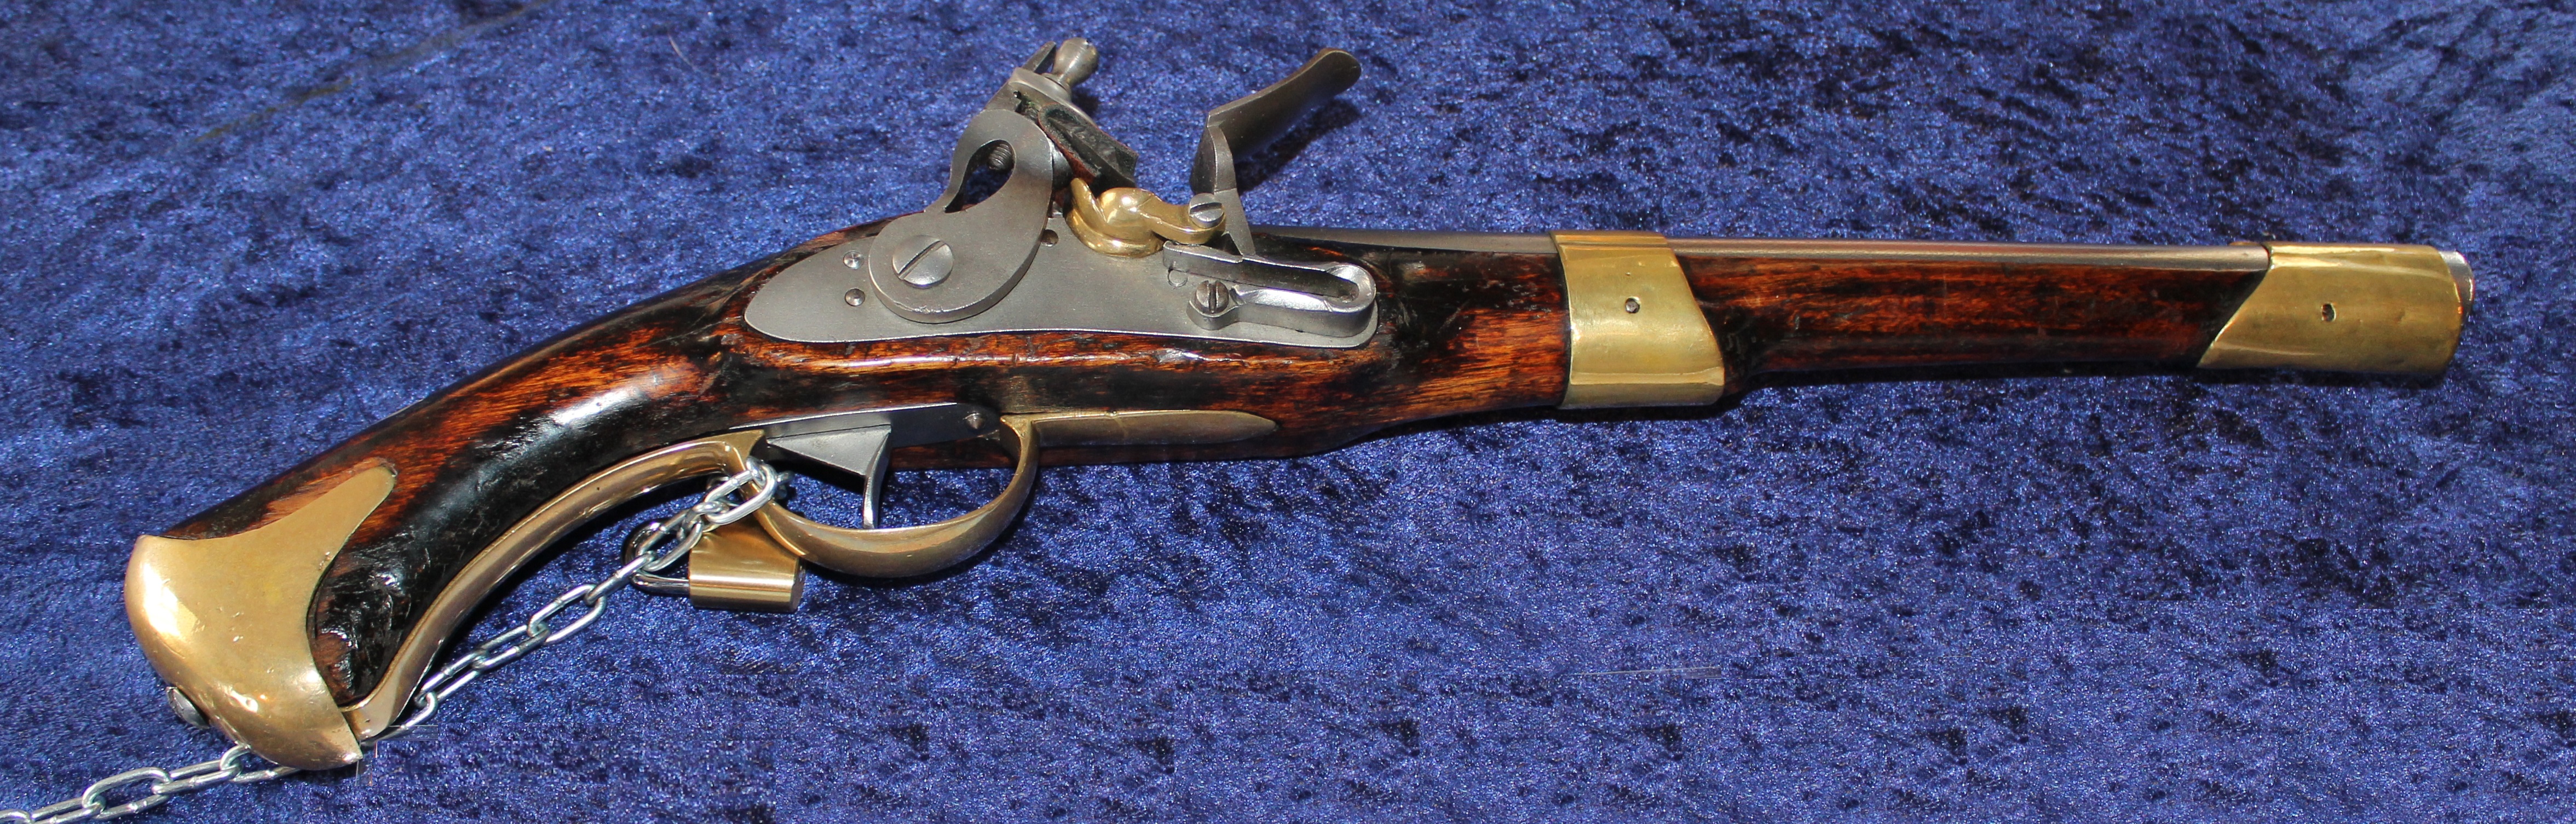 ./guns/pistol/bilder/Pistol-Kongsberg-M1818-1-1.jpg